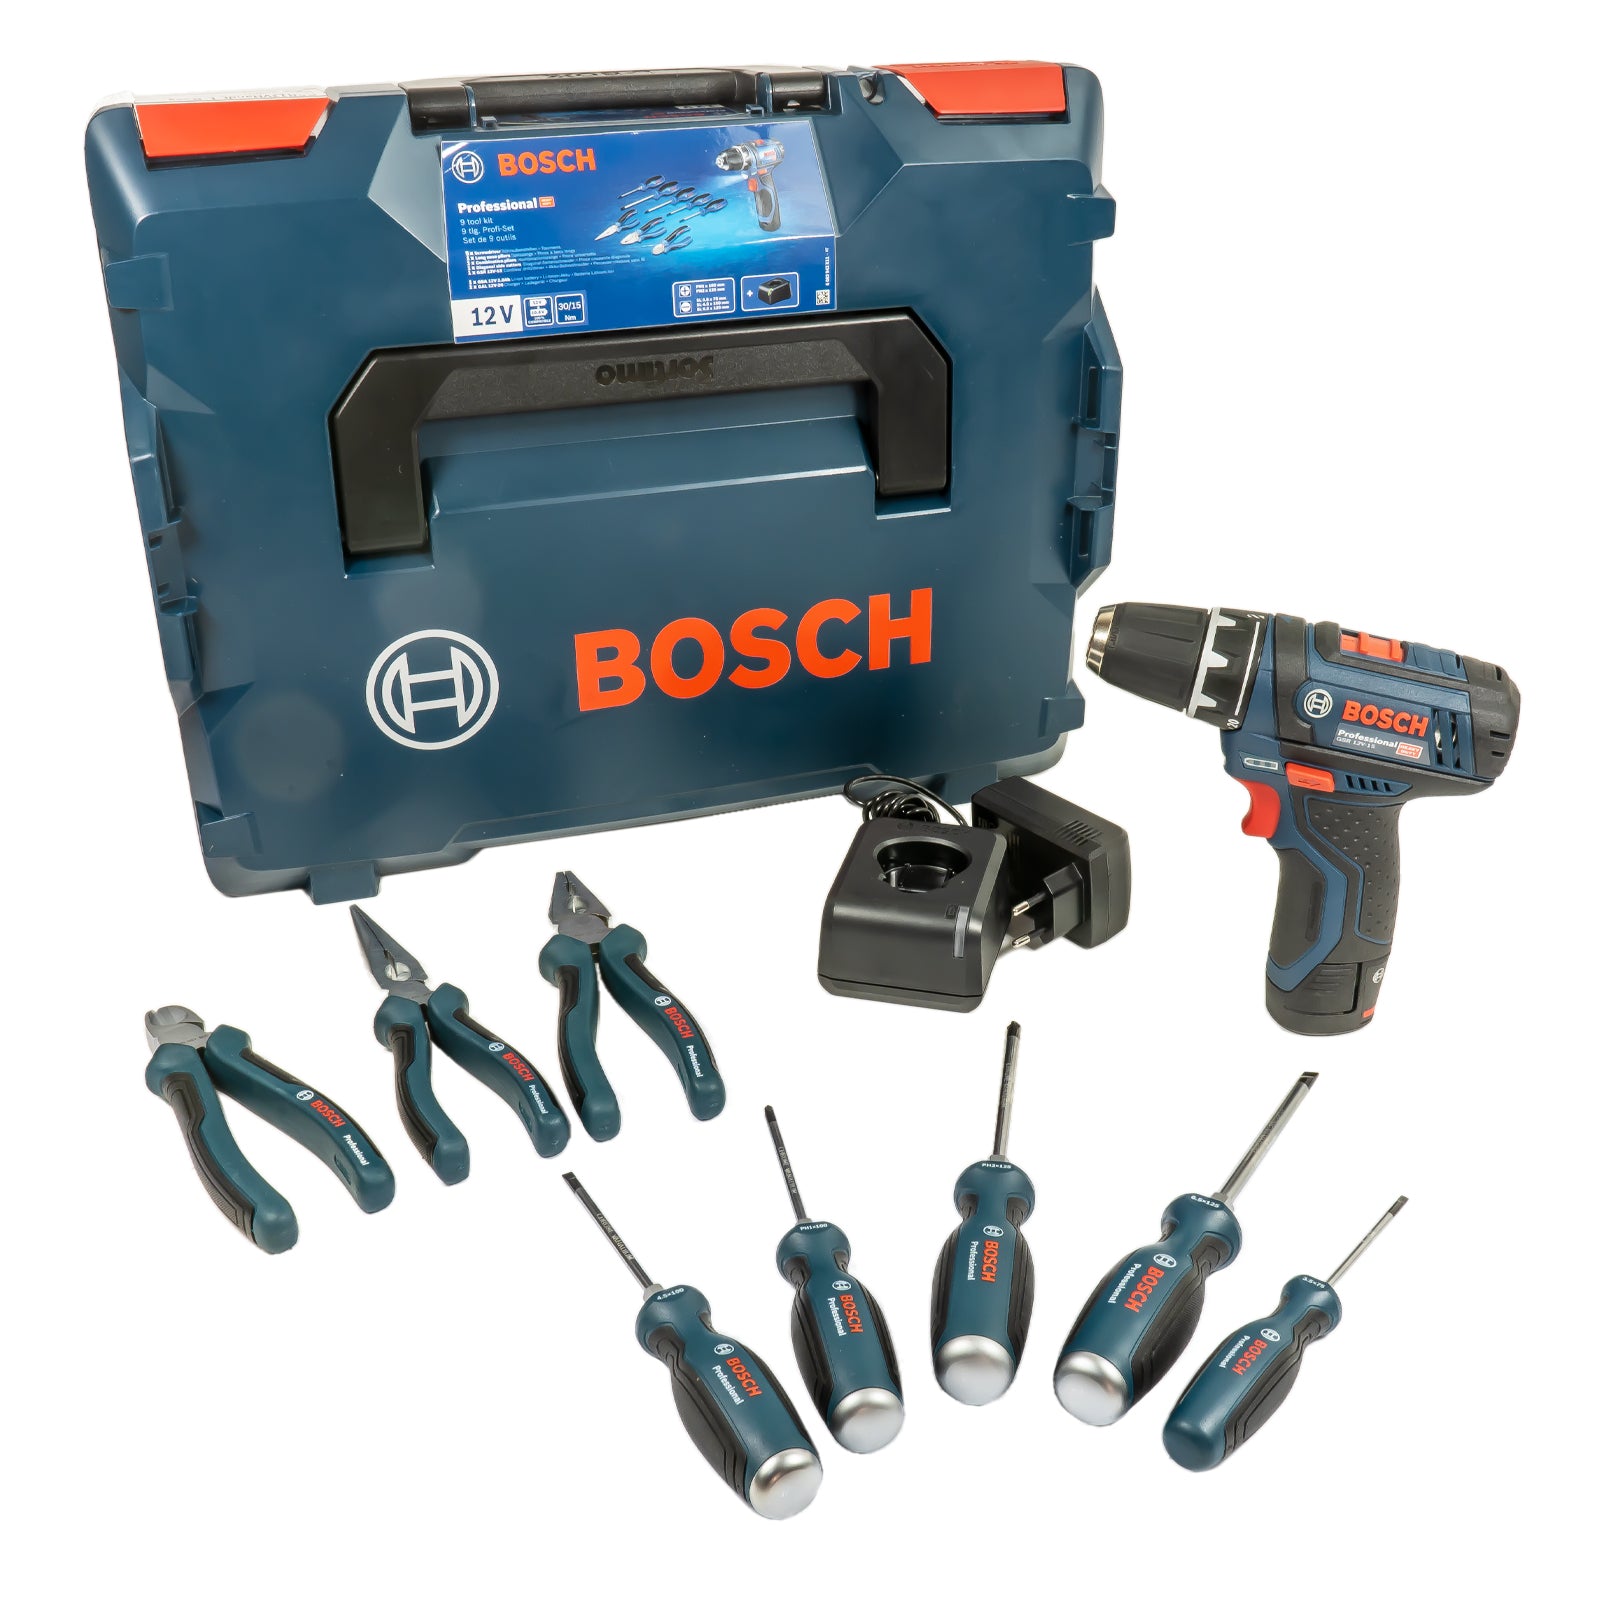 Bosch Professional GSR 12V-15 Akku-Bohrschrauber inkl. 8 Handwerkzeuge in  L-BOXX 102 (1 x 2,0 Ah Akku, 5 x Schraubendreher, 2 x Zange, 1 x  Seitenschneider)